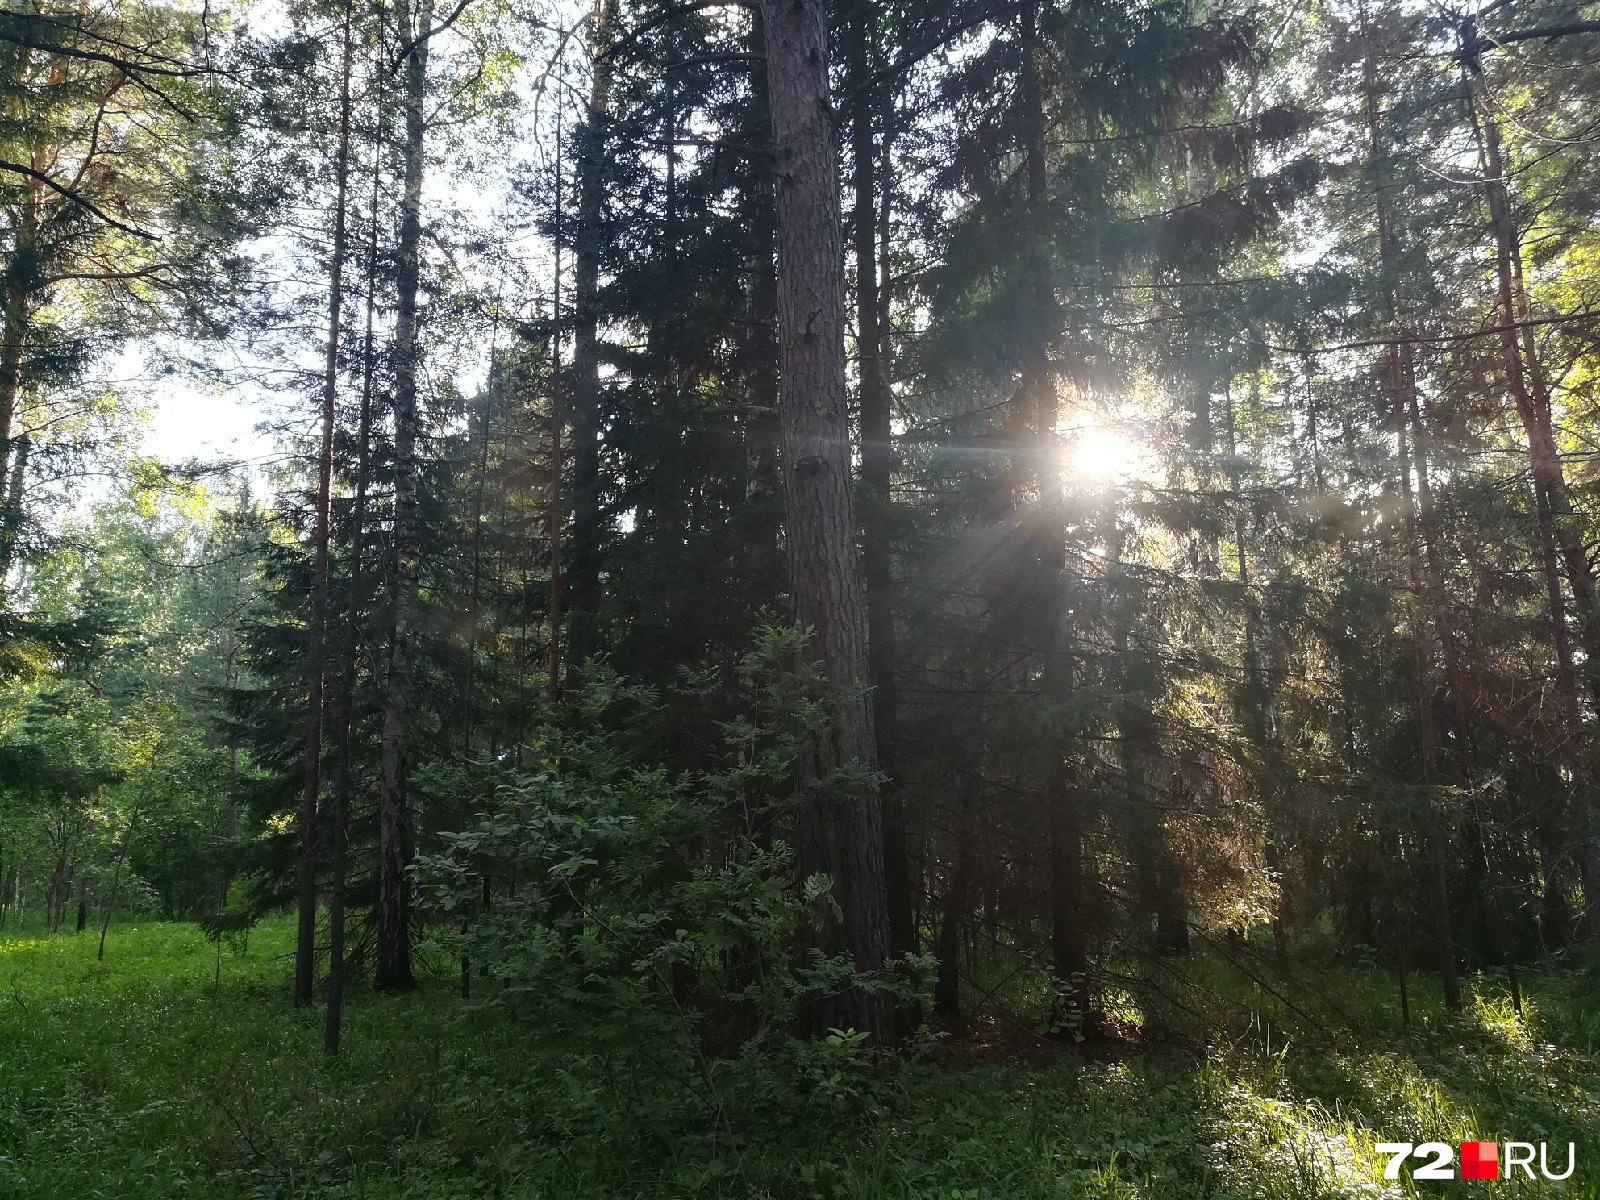 Там, где солнце, можно найти много лесных даров 